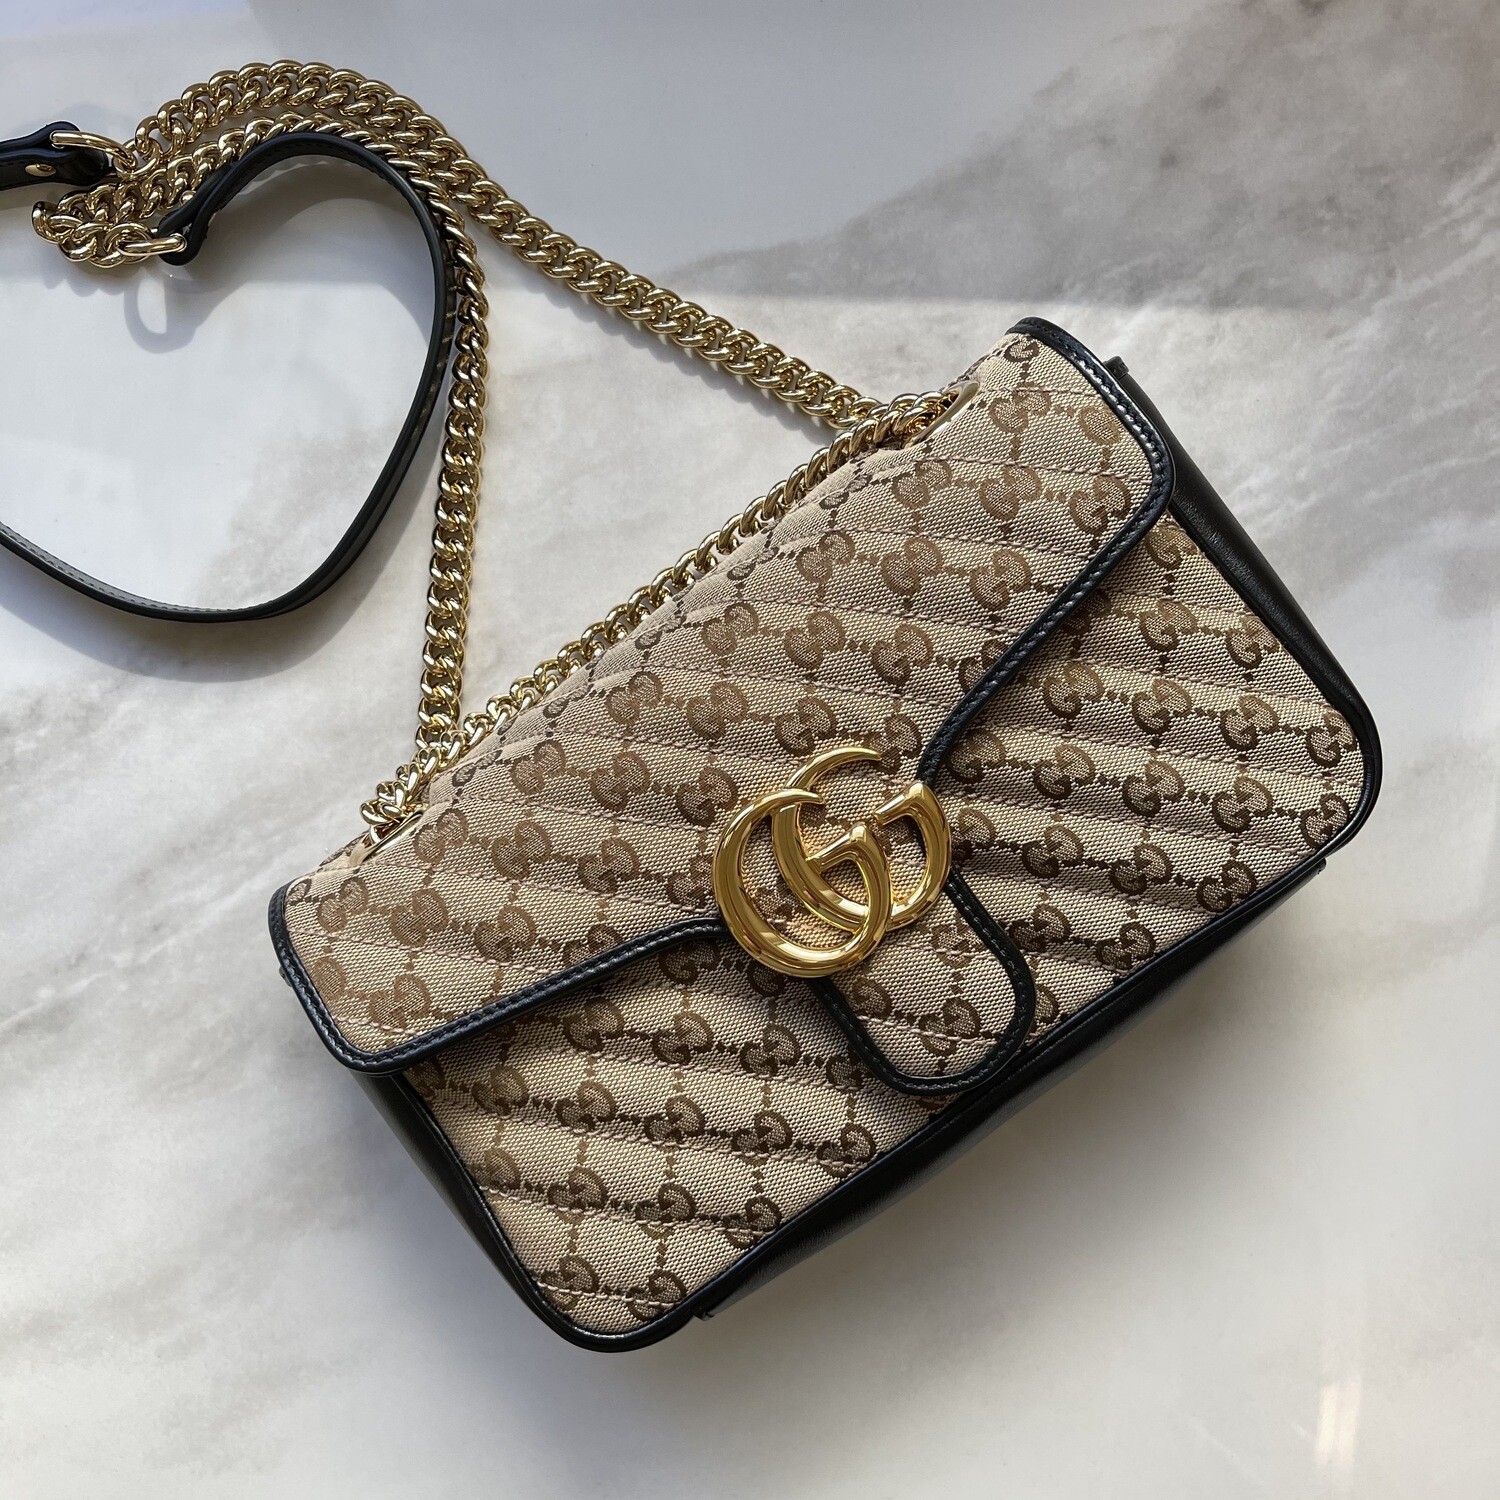 PRE ORDER 1:1 Gucci GG Marmont Matelasse Shoulder Bag - Beige Ebony 10 inch